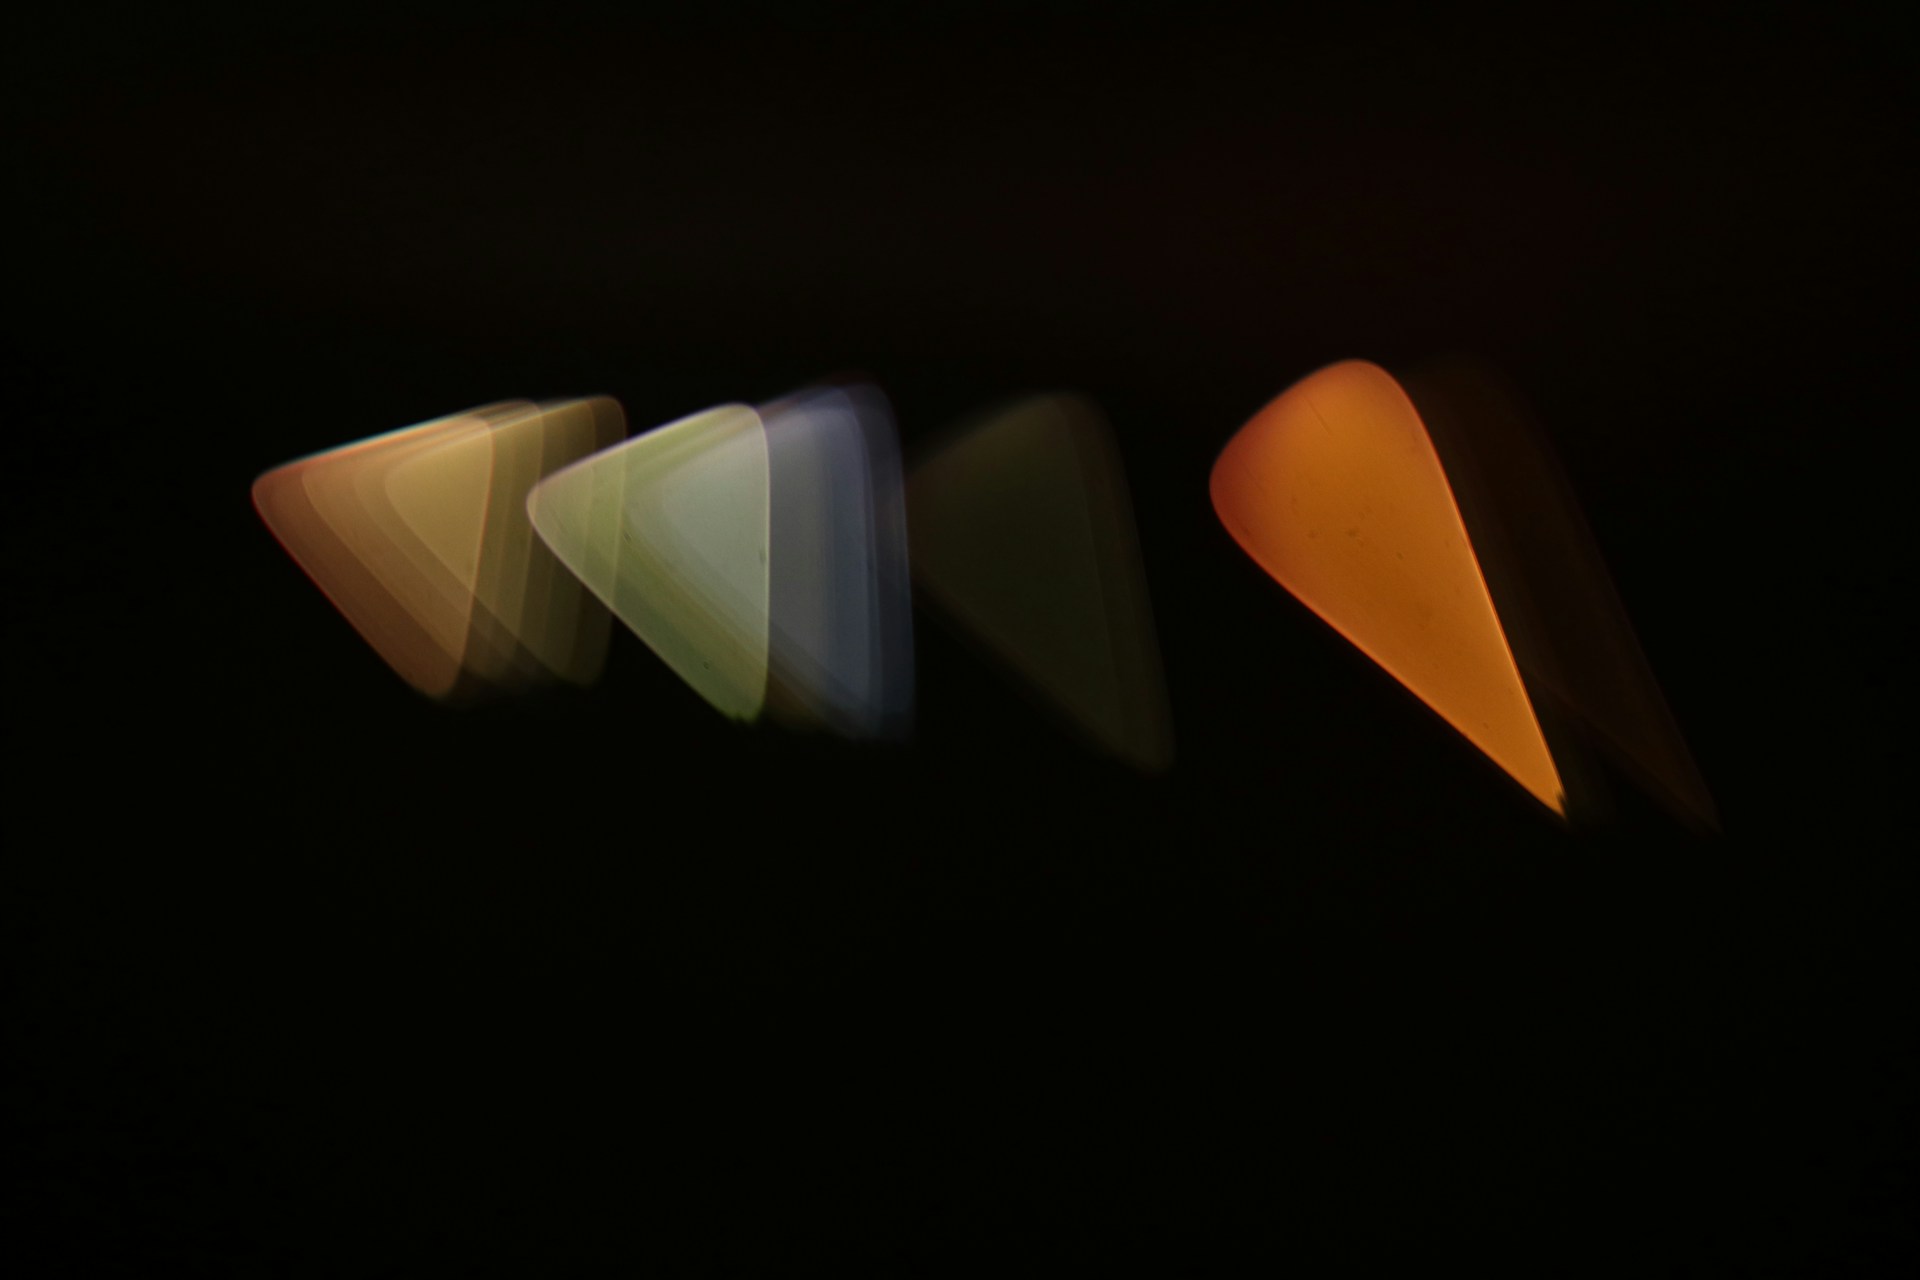 Imagen abstracta que muestra una secuencia de formas de púa de guitarra en perspectiva, con un efecto de desenfoque de movimiento que va del blanco al naranja, sobre un fondo oscuro, creando una sensación de movimiento y transición de colores.